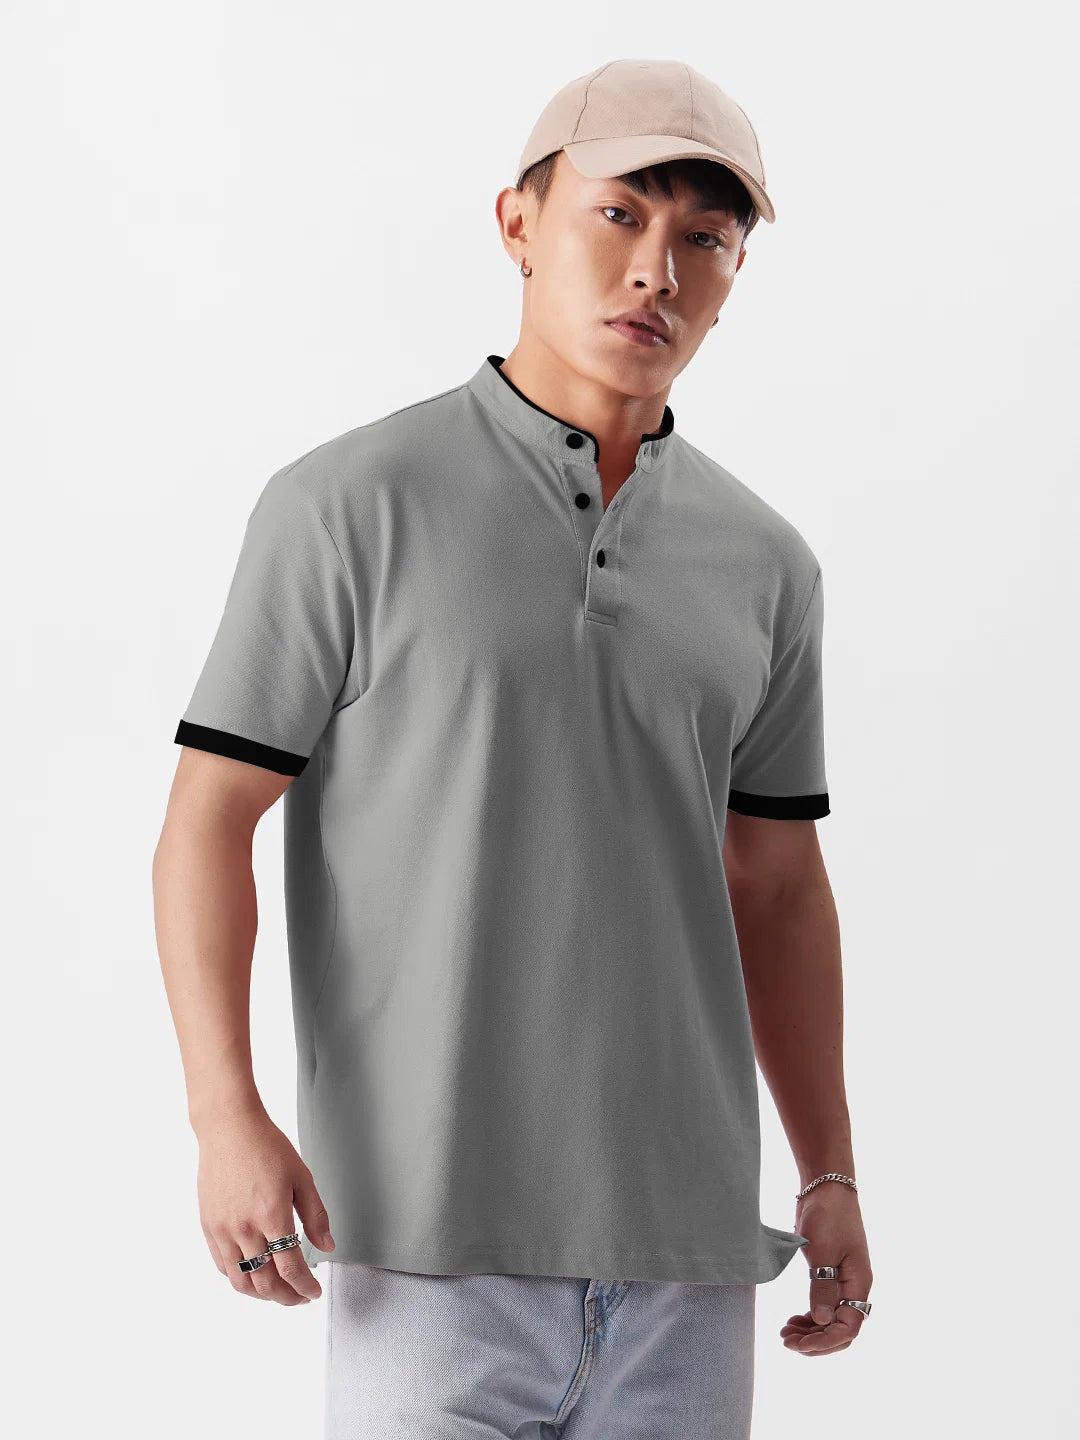 Men's Slim Fit Mandarin Collar Premium Polo